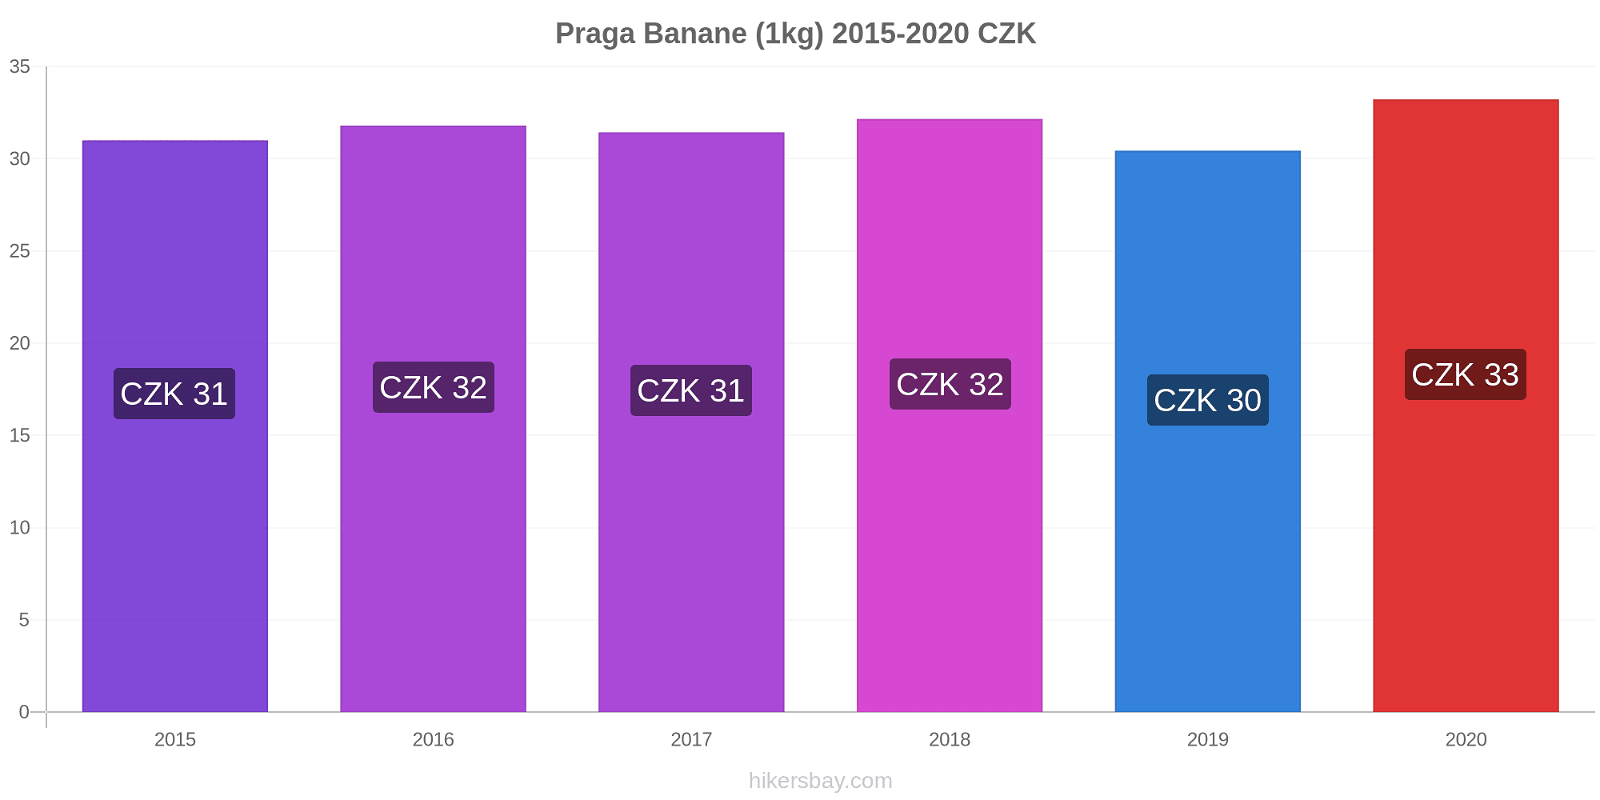 Praga variazioni di prezzo Banana (1kg) hikersbay.com